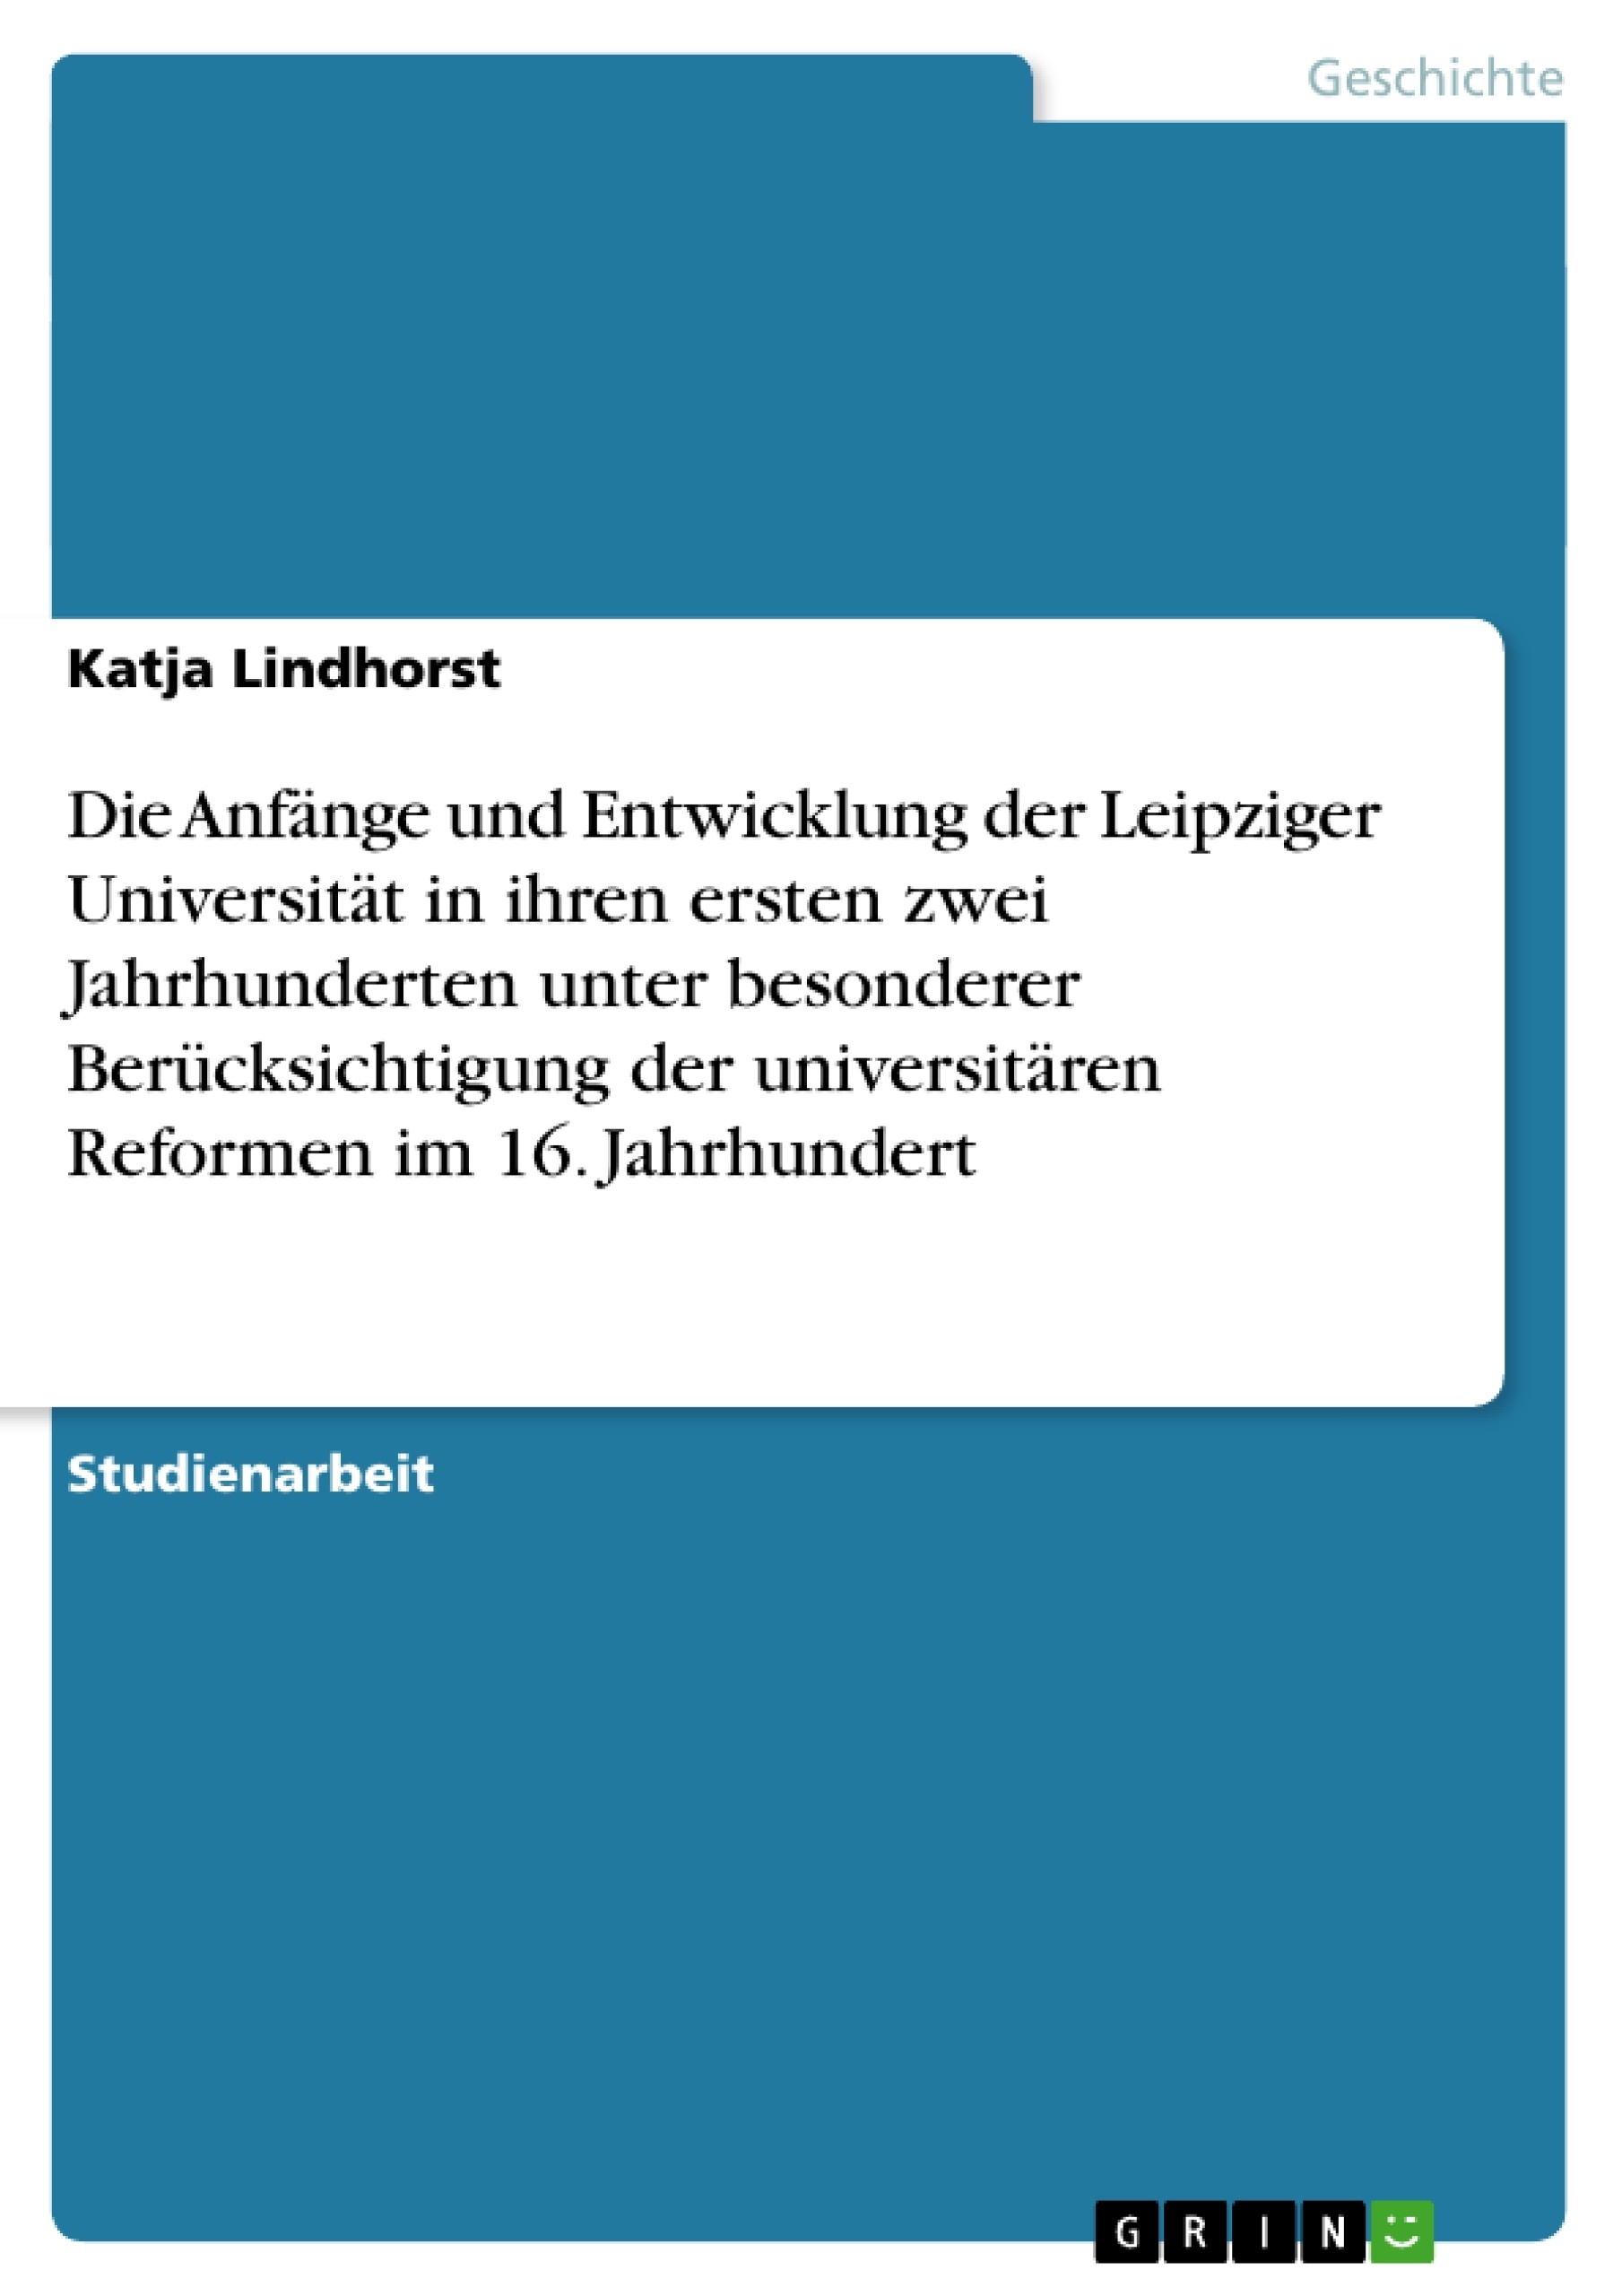 Title: Die Anfänge und Entwicklung der Leipziger Universität in ihren ersten zwei Jahrhunderten unter besonderer Berücksichtigung der universitären Reformen im 16. Jahrhundert